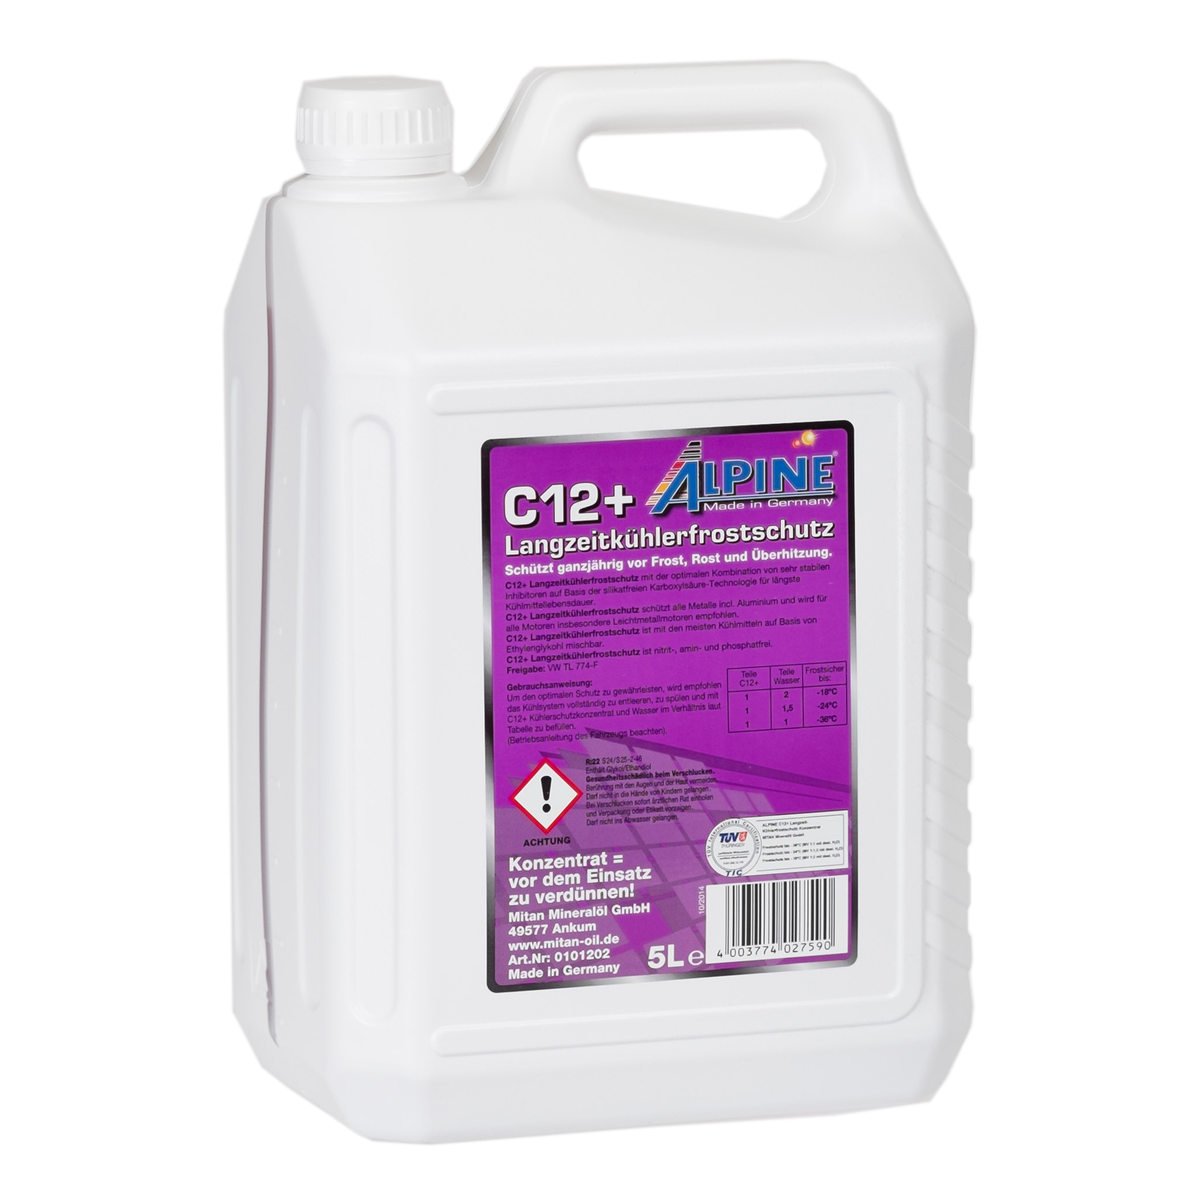 ALPINE Langzeitkühlerfrostschutz (EUR 3/L) violett C12+ gemäß G12+ 5 Liter von Mitan